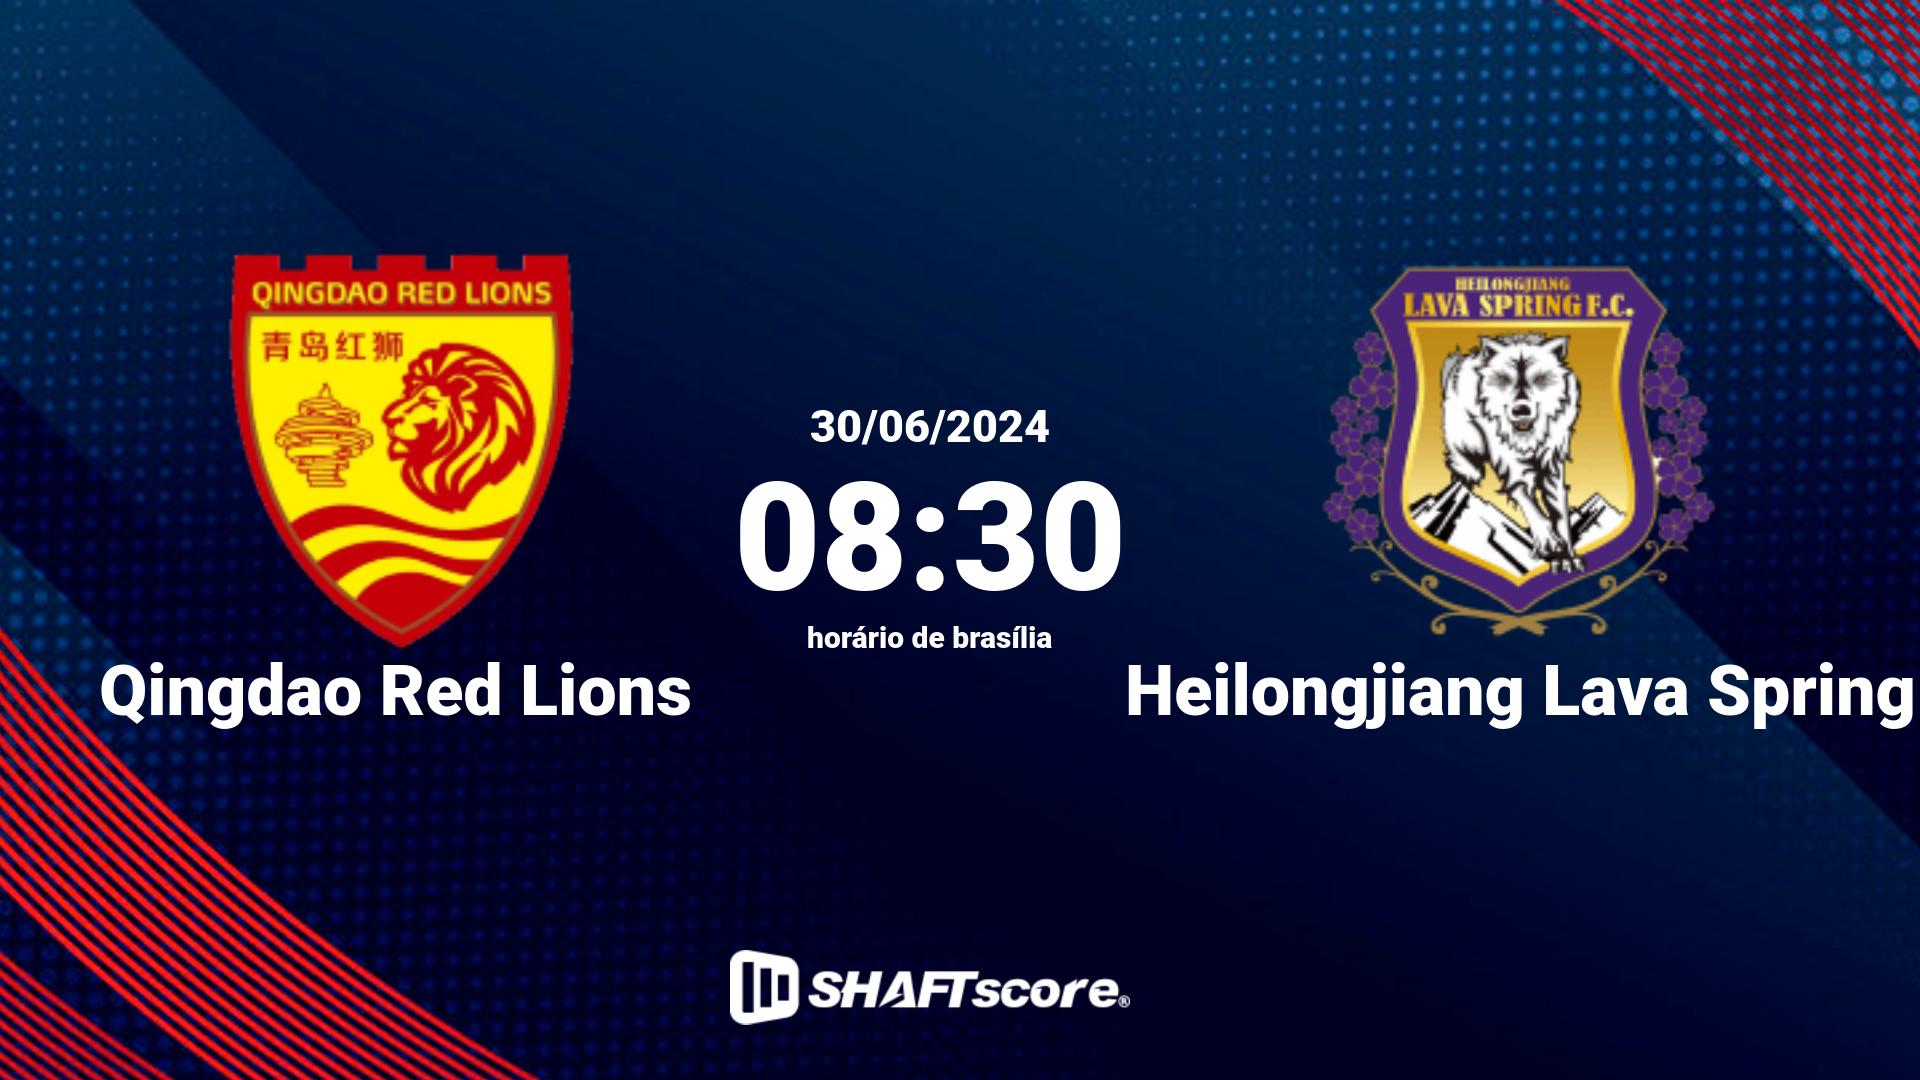 Estatísticas do jogo Qingdao Red Lions vs Heilongjiang Lava Spring 30.06 08:30